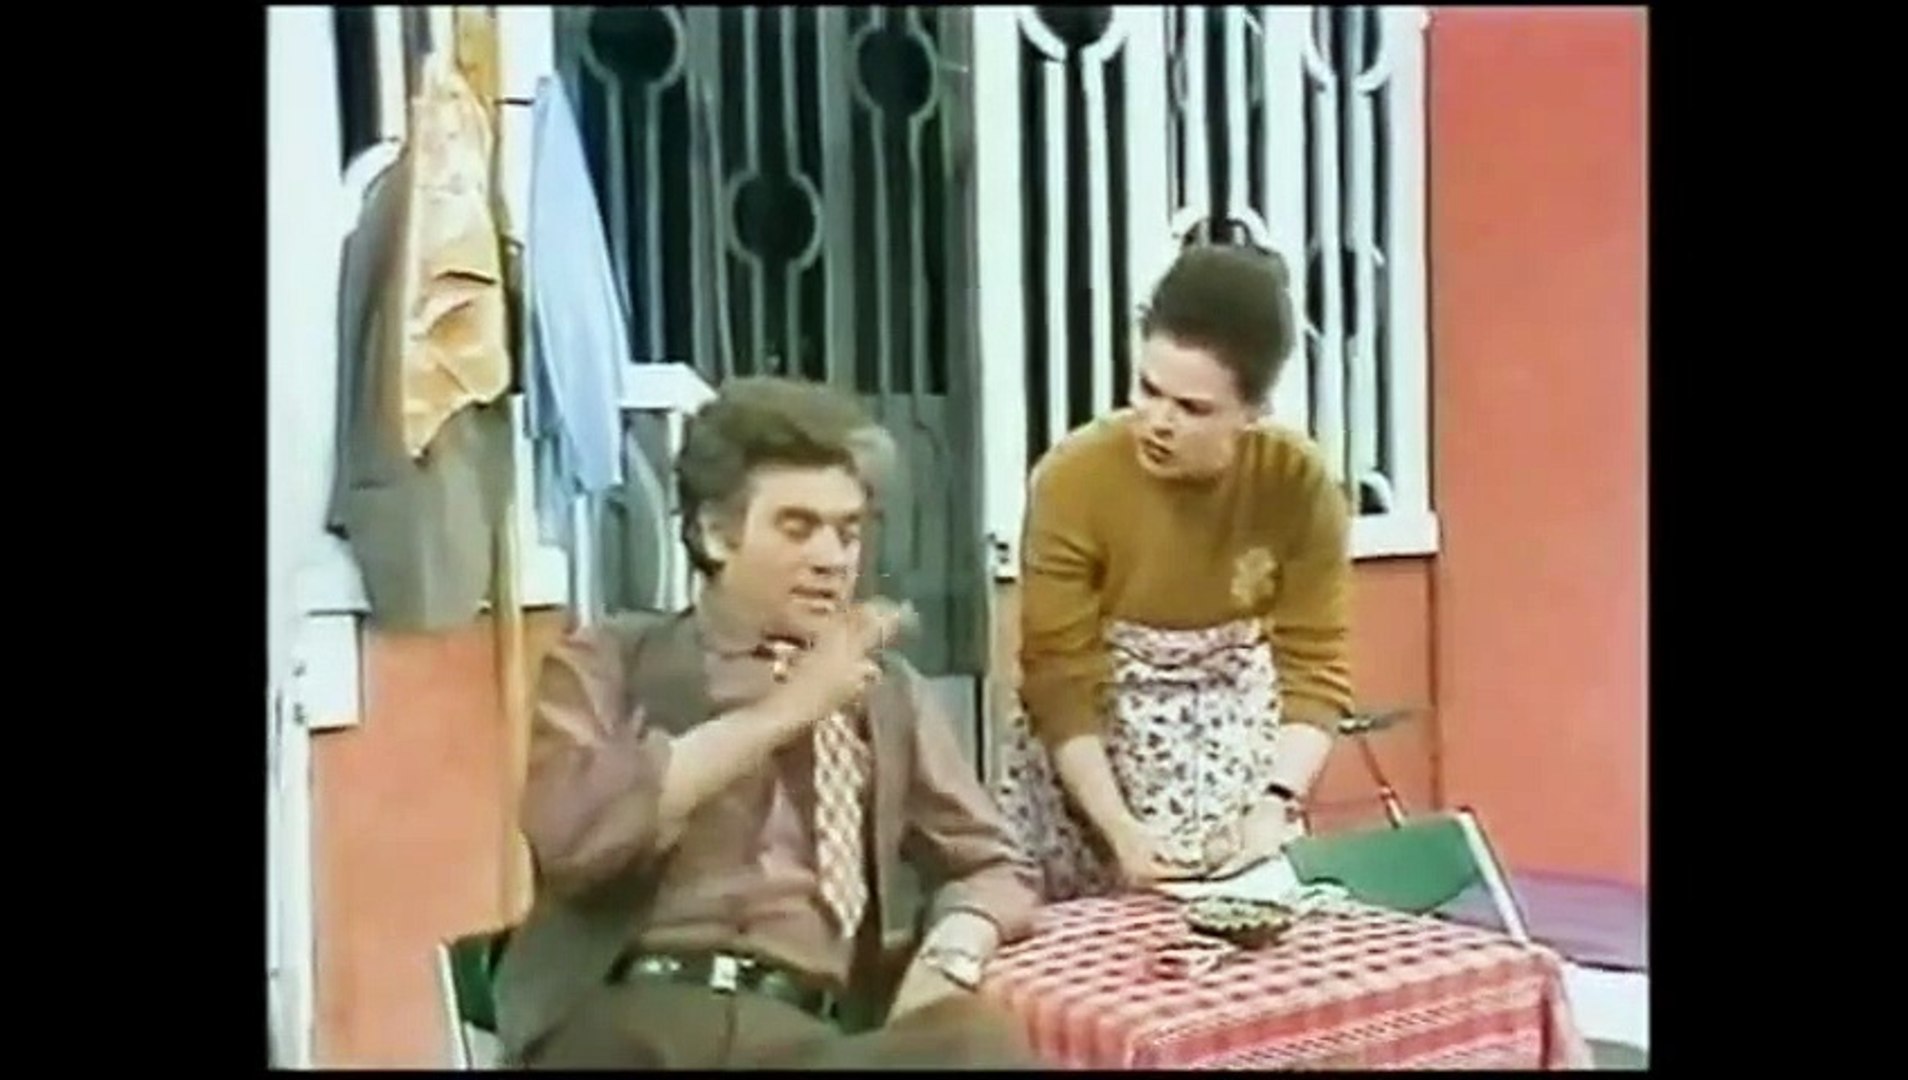 37 vite më parë shfaqej për herë të parë komedia më e bukur shqiptare, “Pallati 176”.